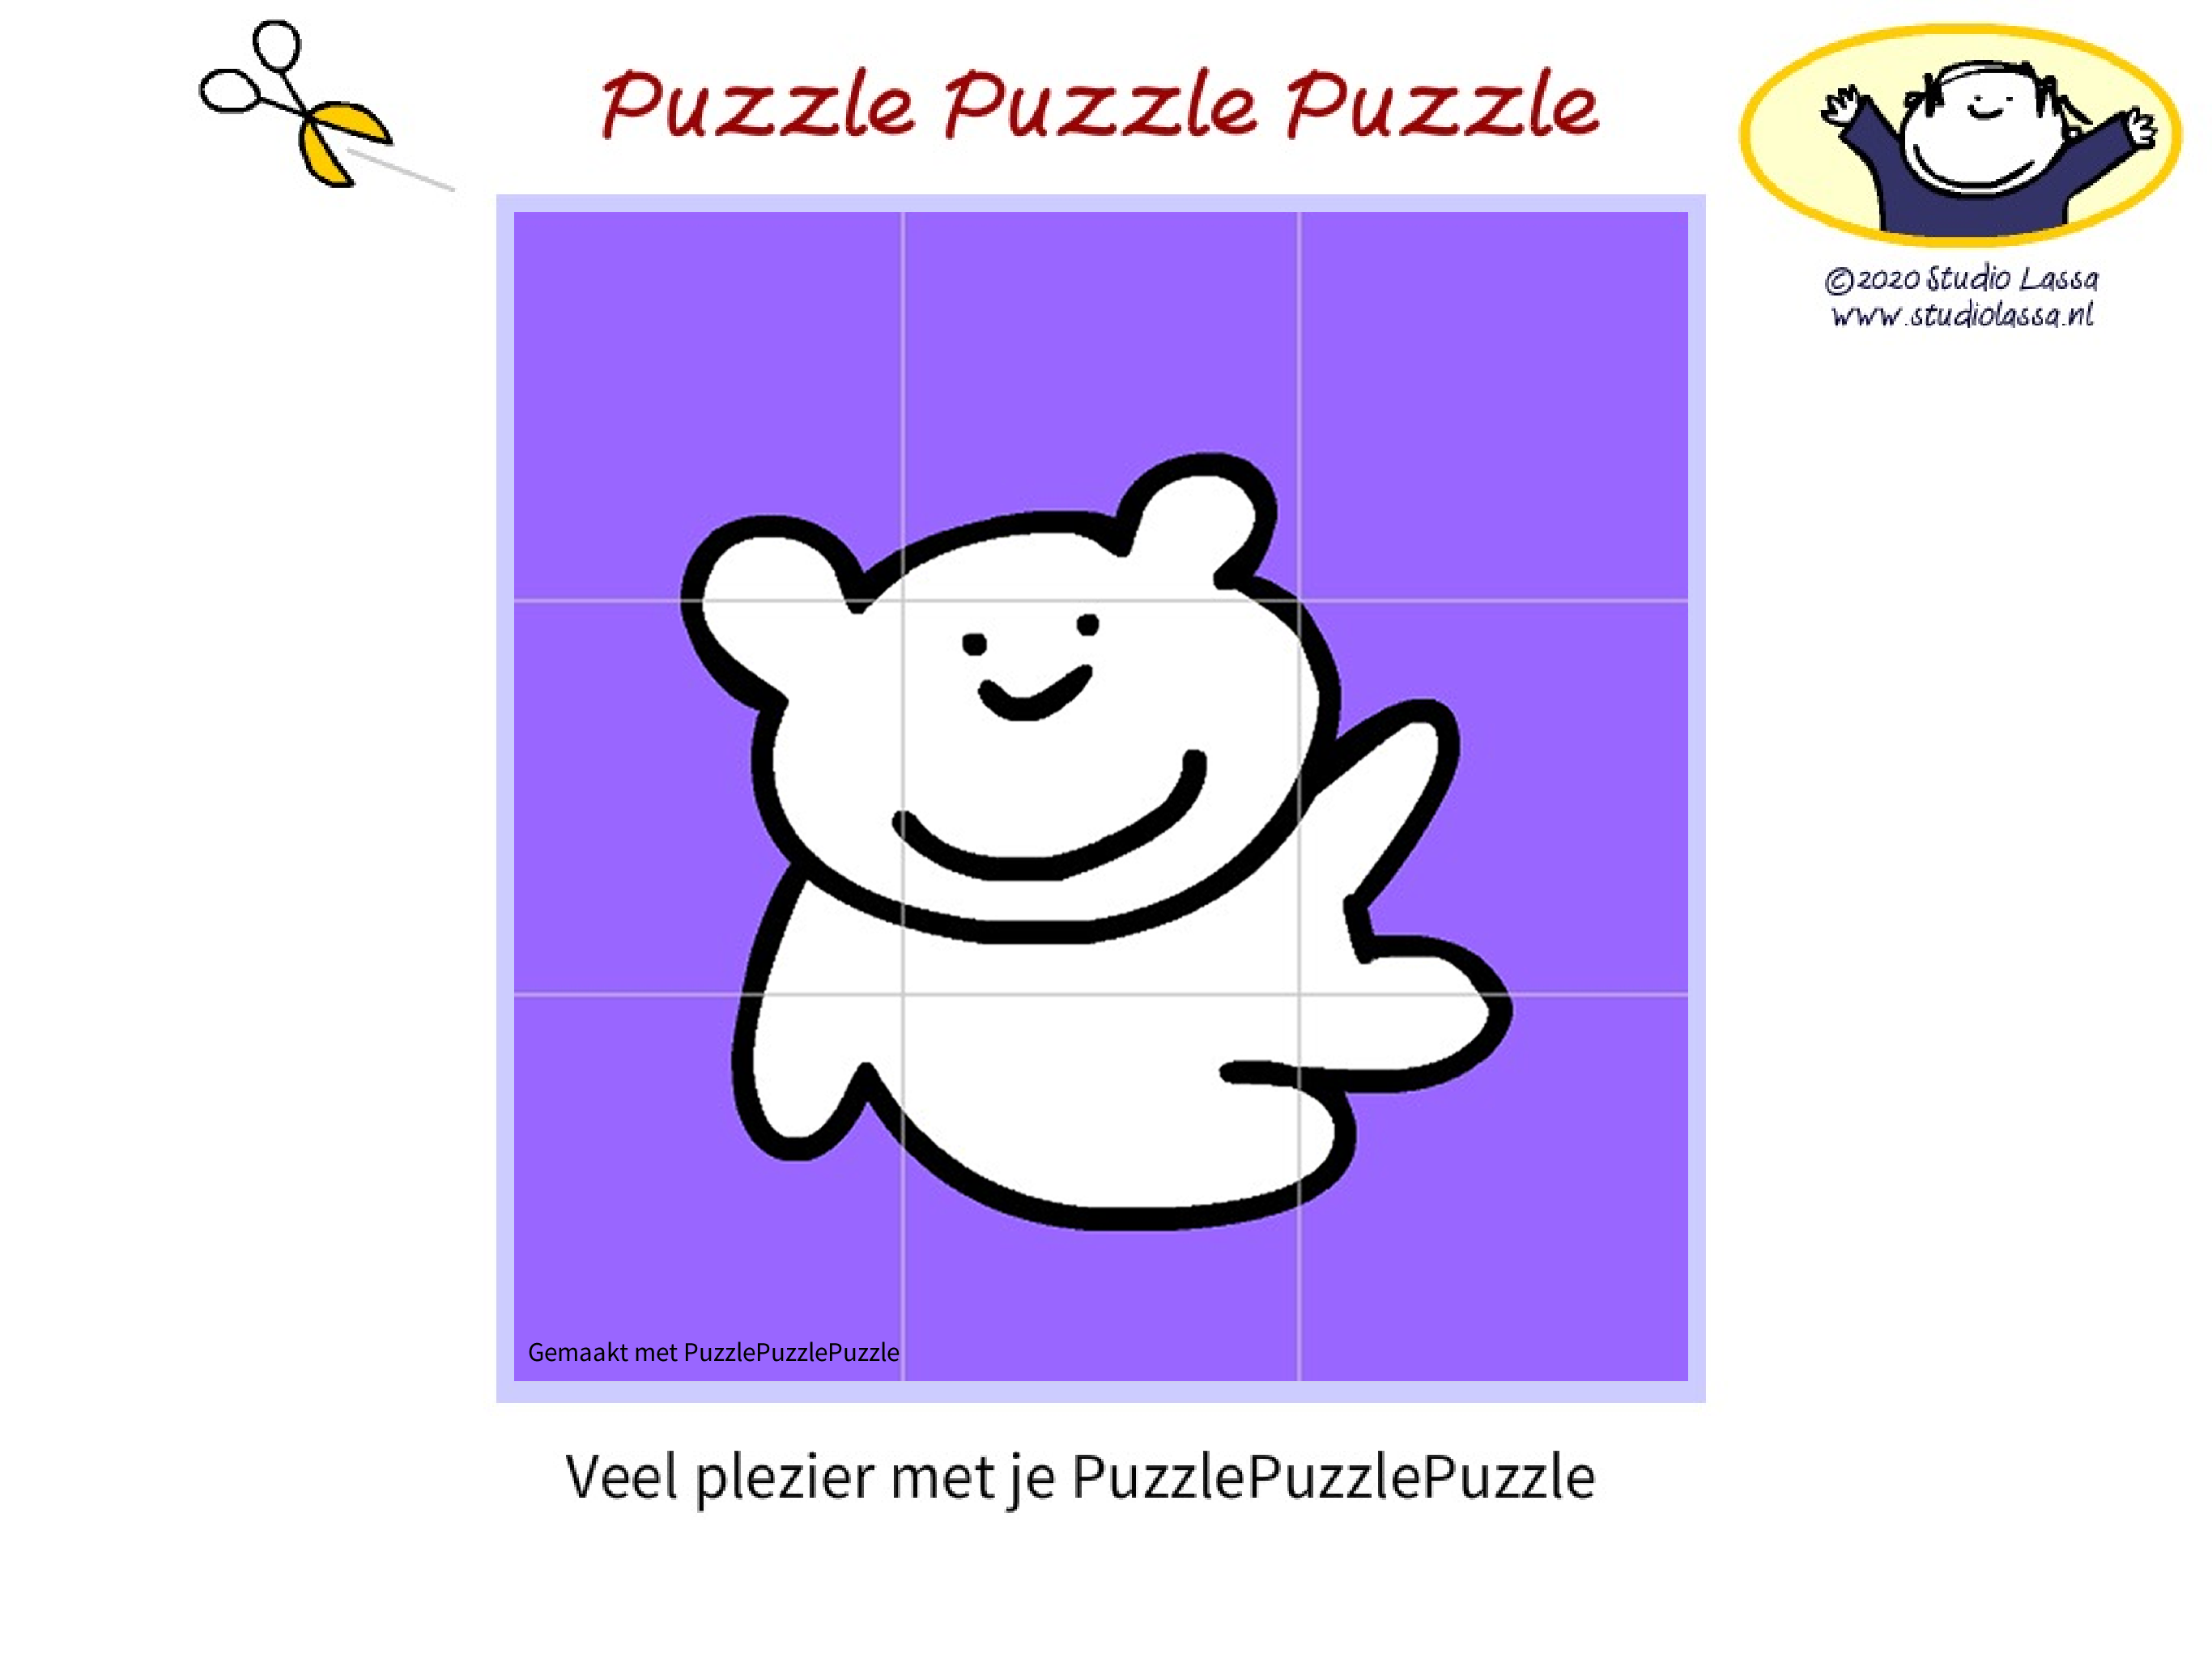 PuzzlePuzzlePuzzle